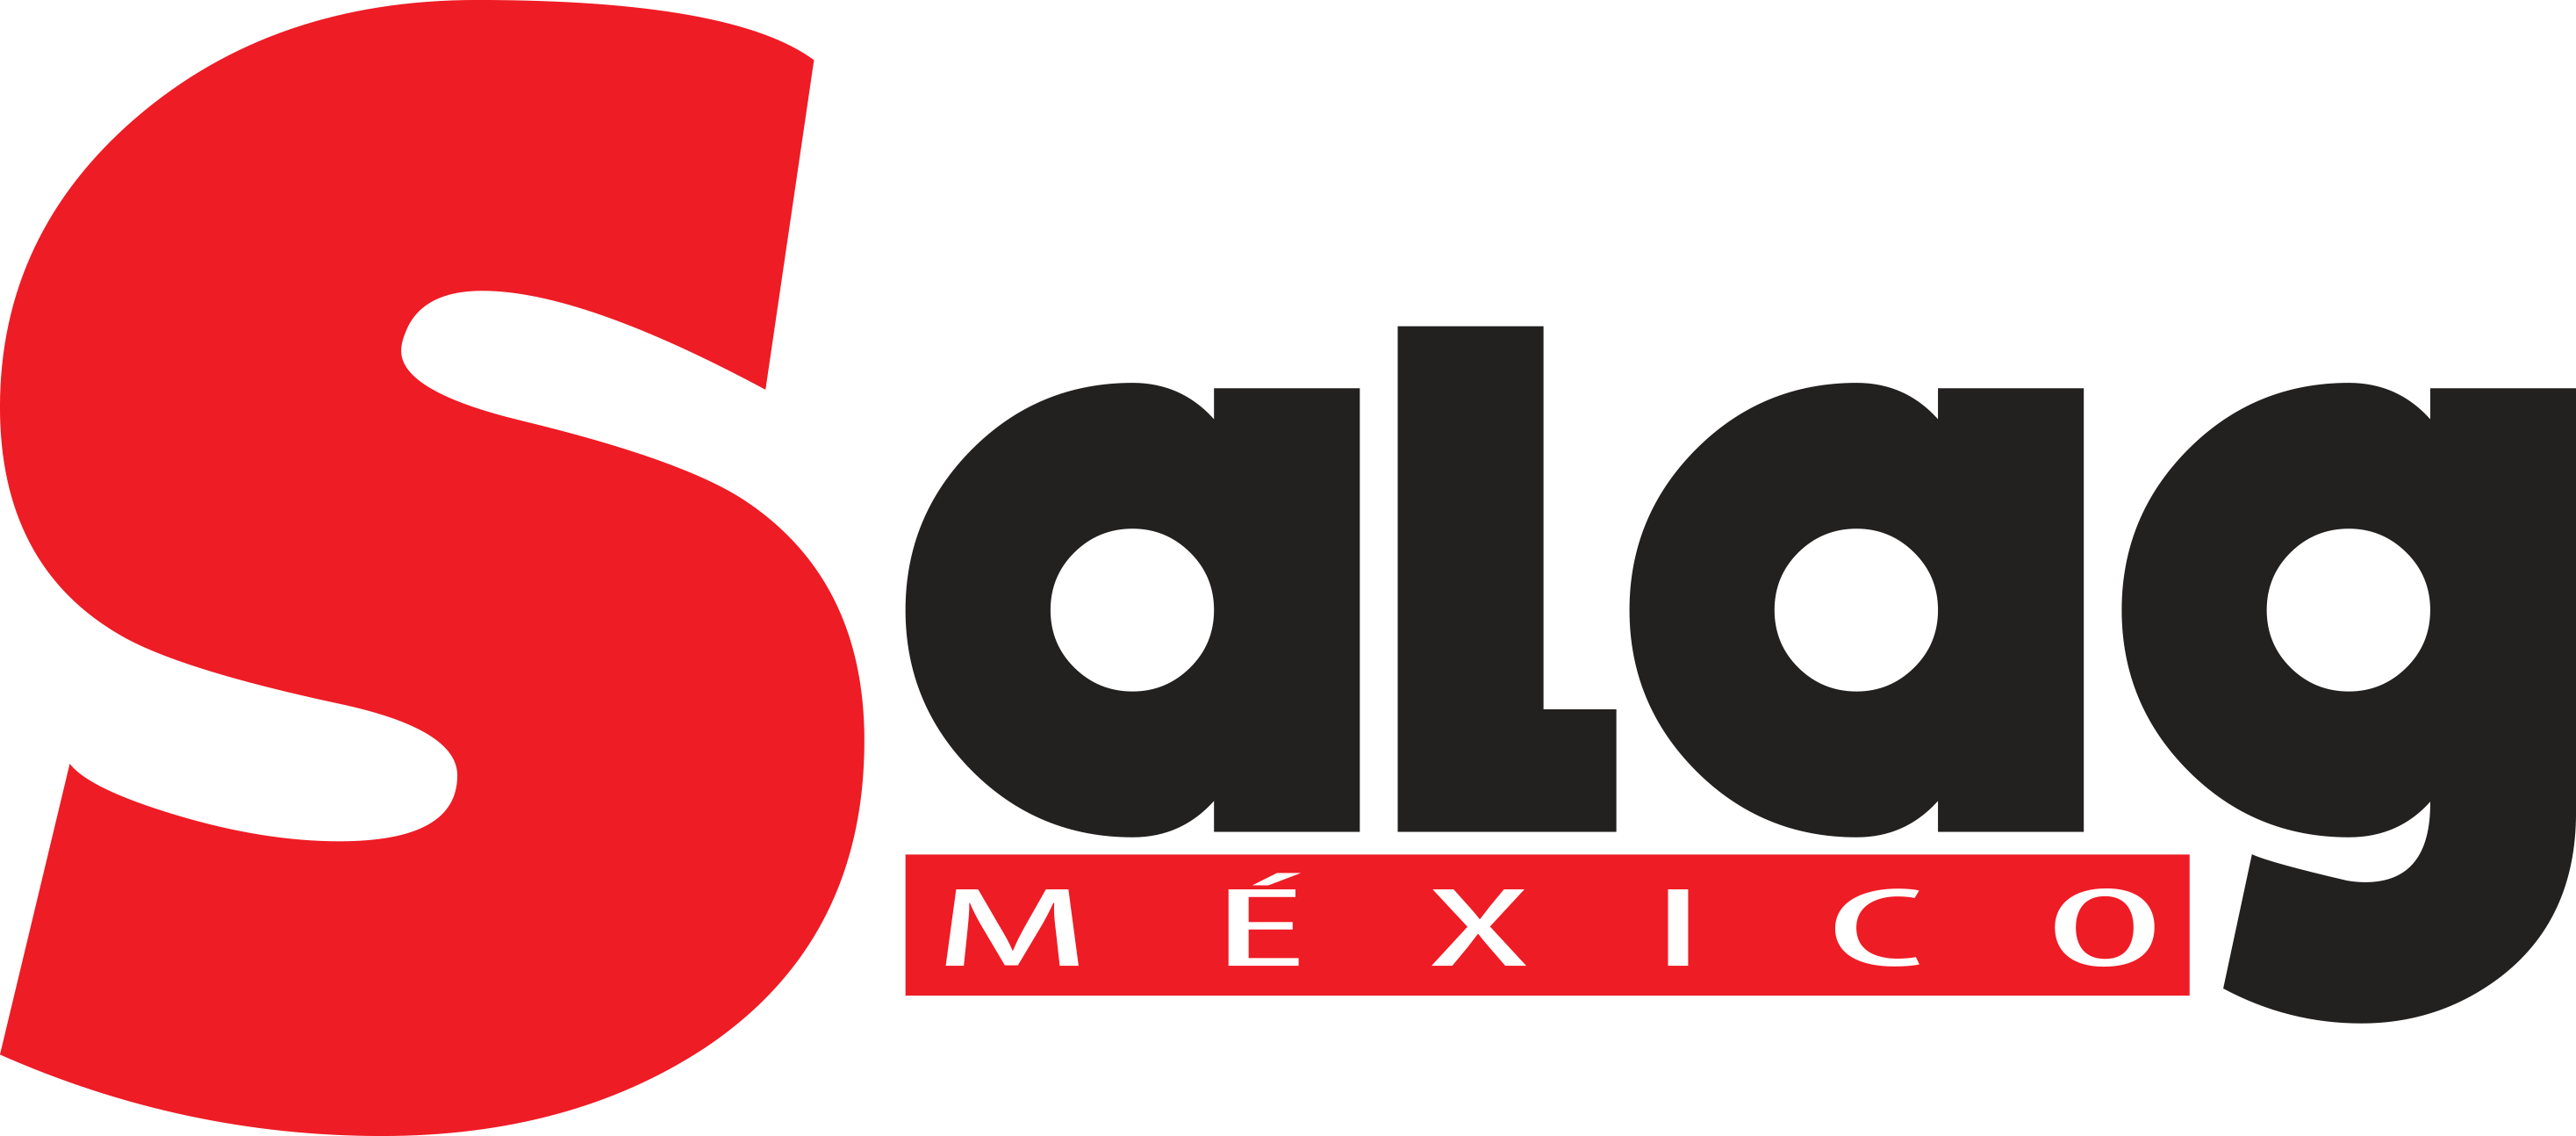 Salag México